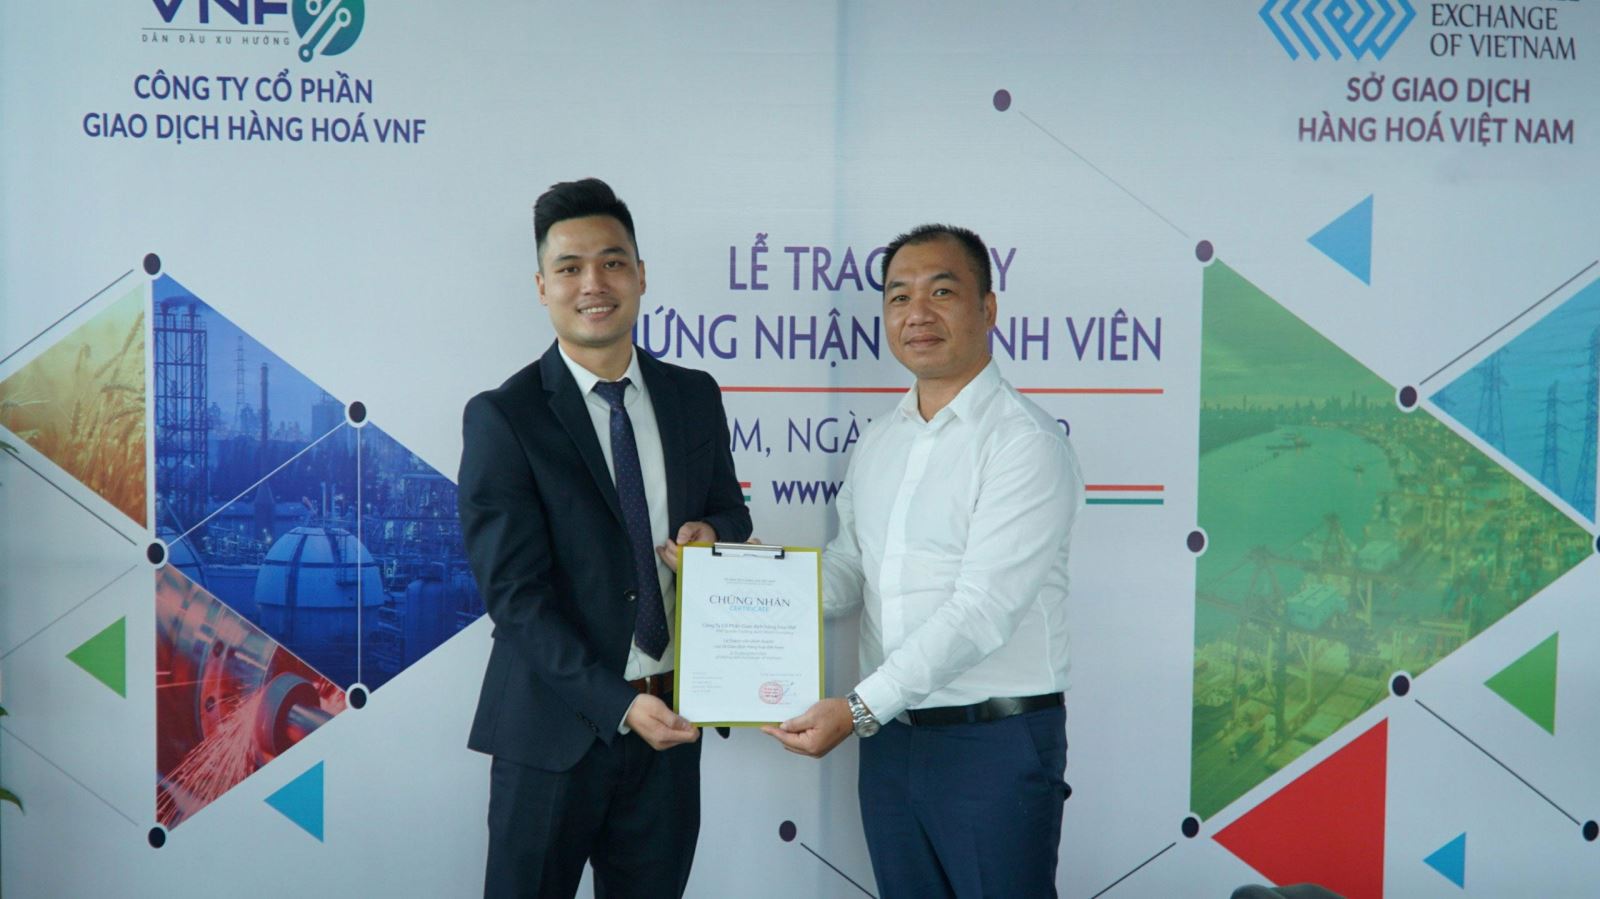 Sở Giao dịch Hàng hóa Việt Nam trao Giấy chứng nhận Thành viên kinh doanh mới